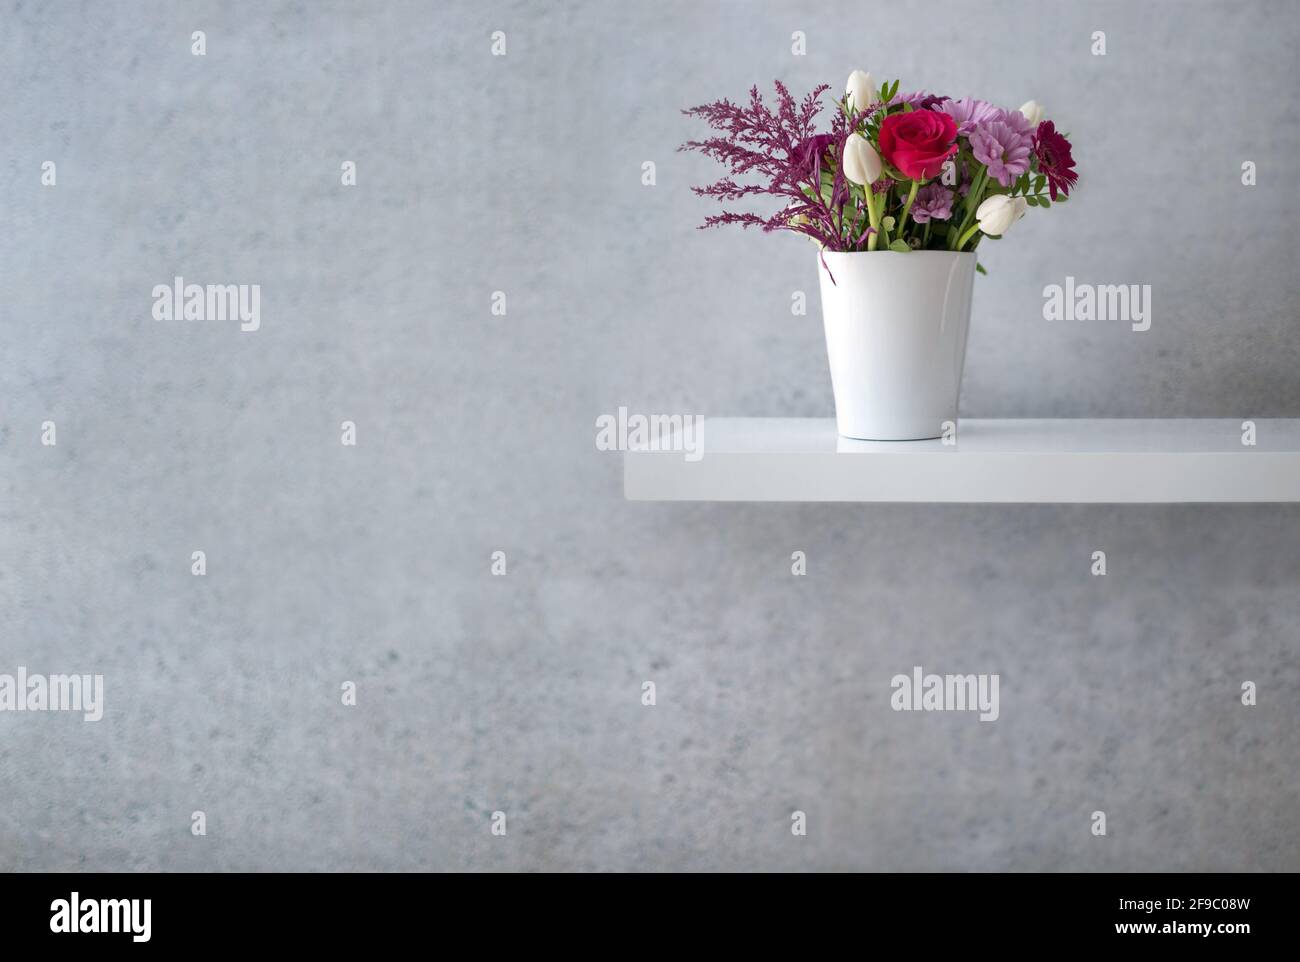 Motif fleuri assorti sur une étagère blanche flottante contre un mur en béton Banque D'Images